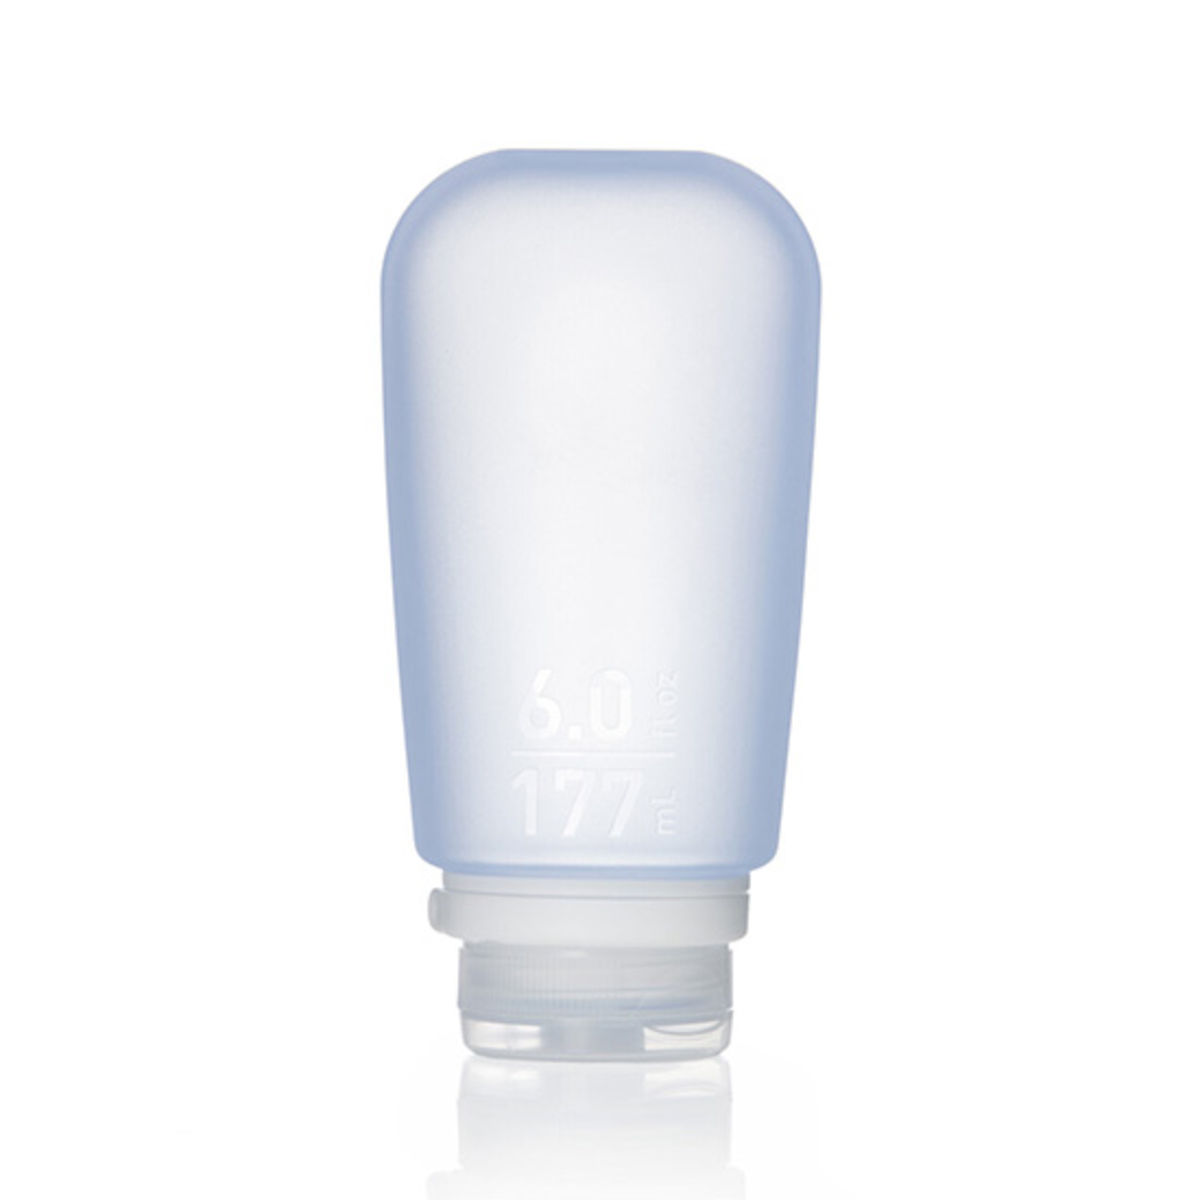 Humangear GoToob+ liquid travel container - 177 ml